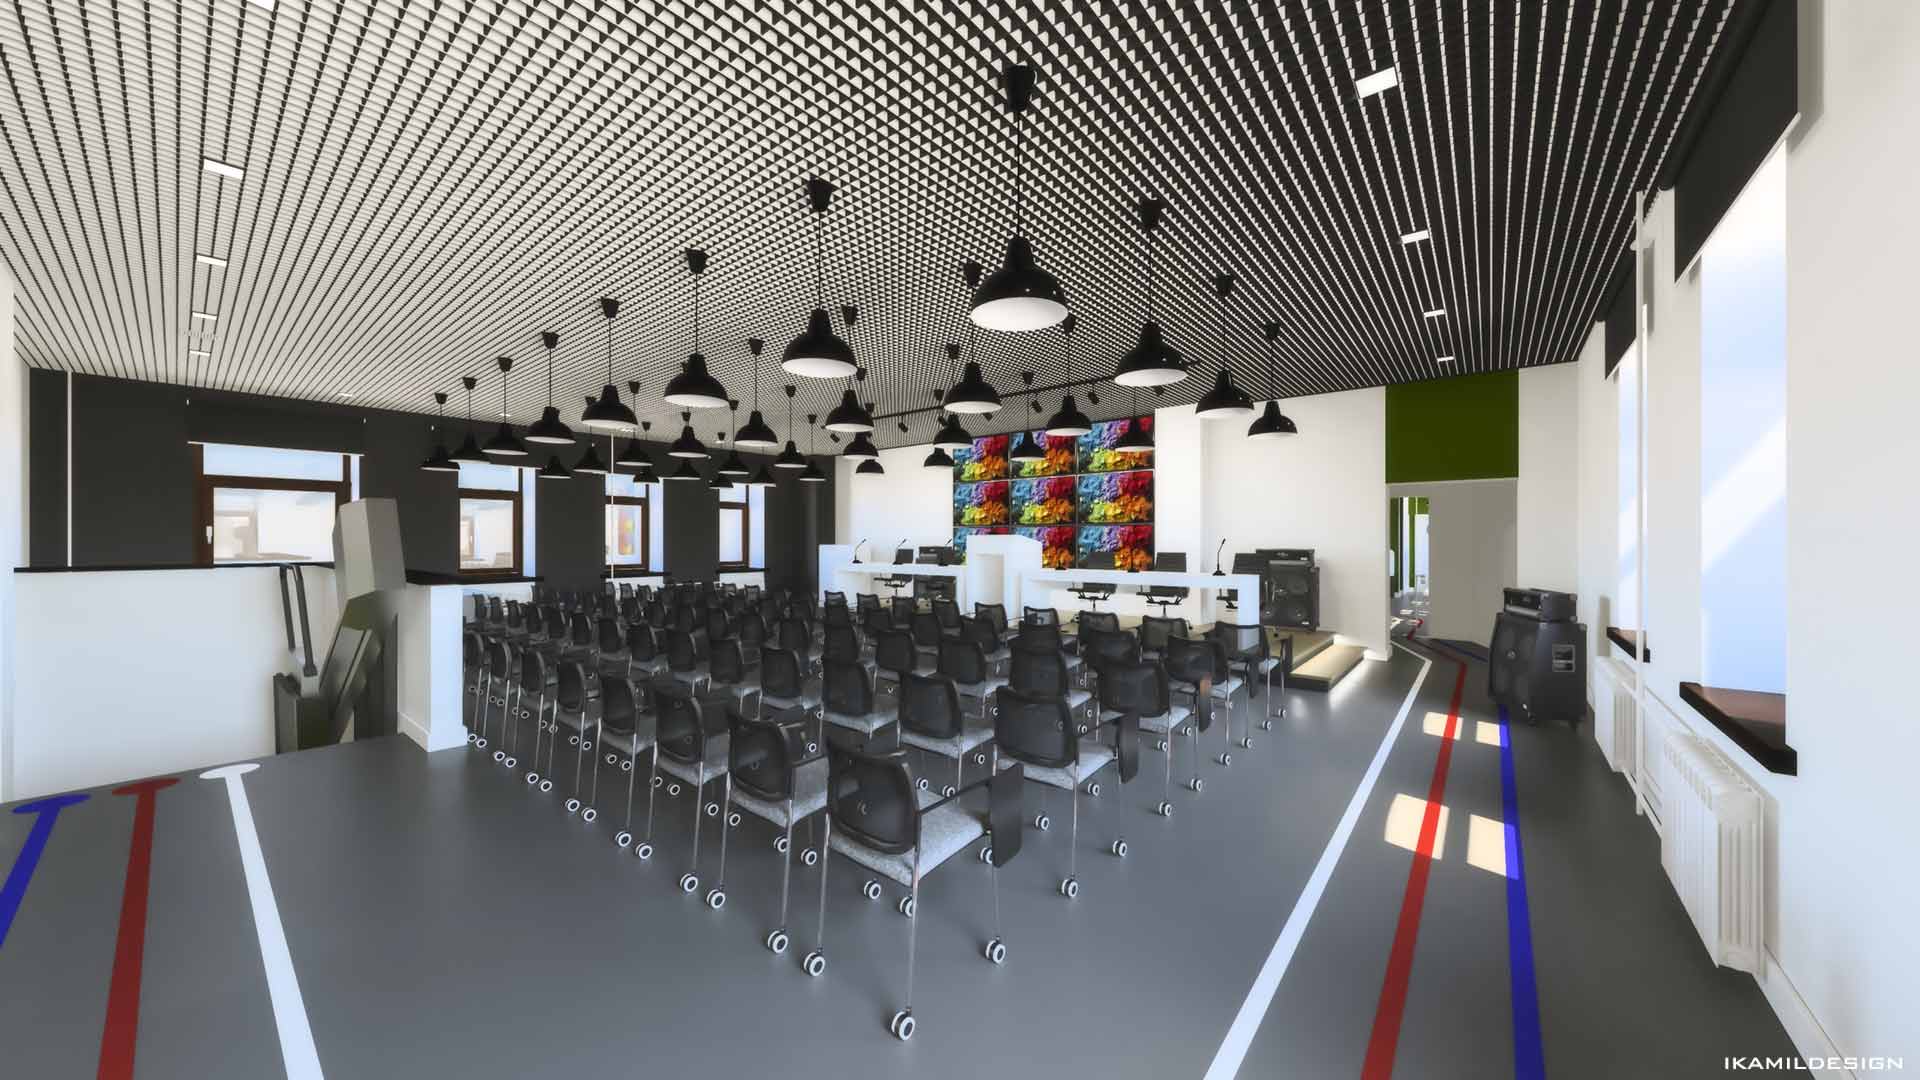 проектирование большого конференц-зала, москва, ikamildesign